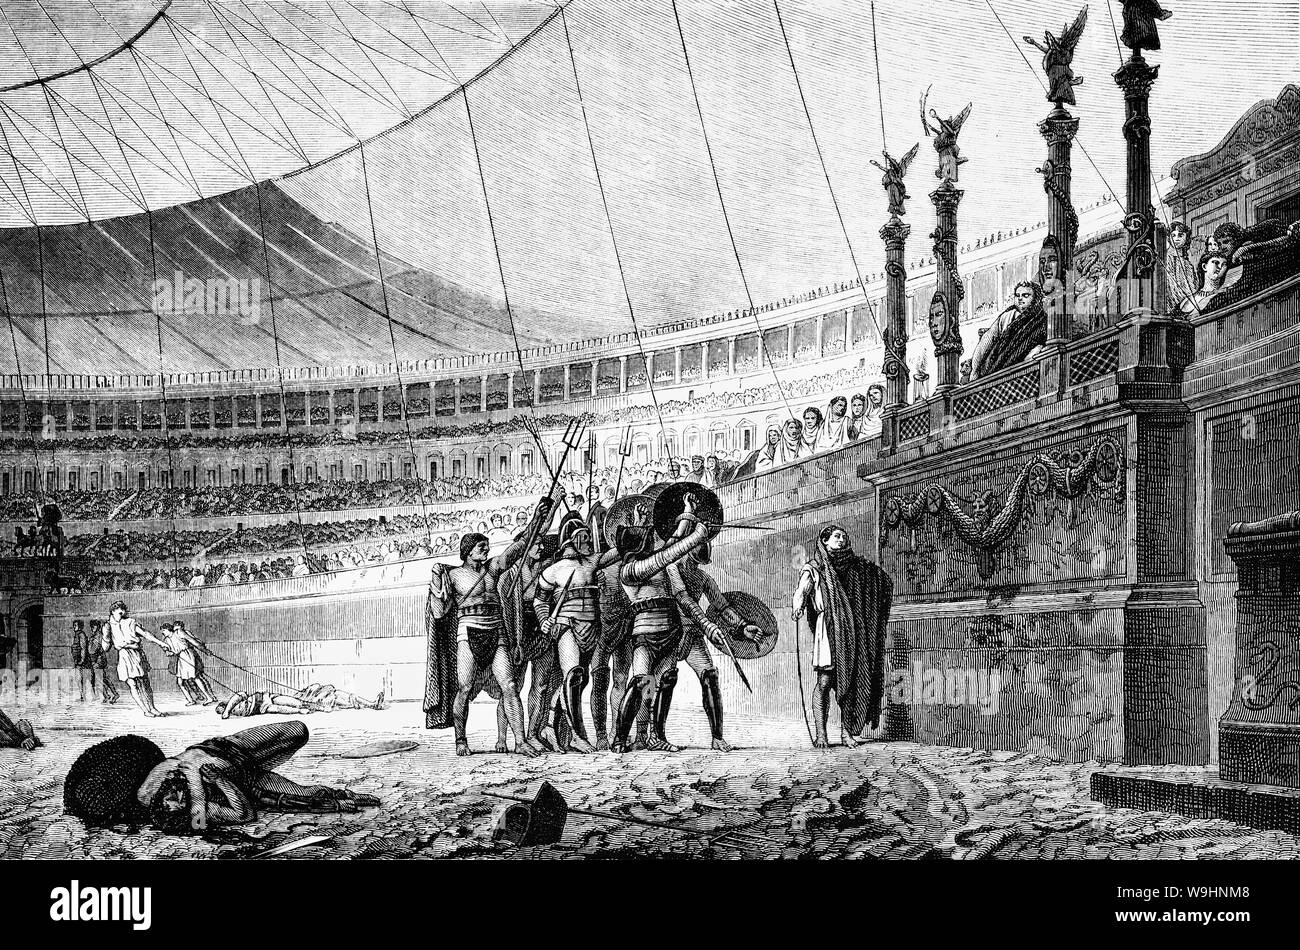 Gladiator Spiele dauerte für fast tausend Jahre, die ihren Höhepunkt zwischen dem 1. Jahrhundert v. Chr. und dem 2. nachchristlichen Jahrhundert erreichen. Bewaffnete Kämpfer unterhalten das Publikum in die römische Republik und das Römische Reich in gewaltsame Auseinandersetzungen mit anderen Gladiatoren, wilde Tiere, und verurteilte Straftäter. Einige Gladiatoren waren Freiwillige, die meisten verachtet wurden als Sklaven, unter rauen Bedingungen geschult, sozial ausgegrenzt und abgesondert auch im Tod. Sie waren in der hohen und niedrigen Kunst gefeiert, und ihr Wert als Entertainer war in kostbaren und alltägliche Objekte gedacht in der gesamten römischen Welt. Stockfoto